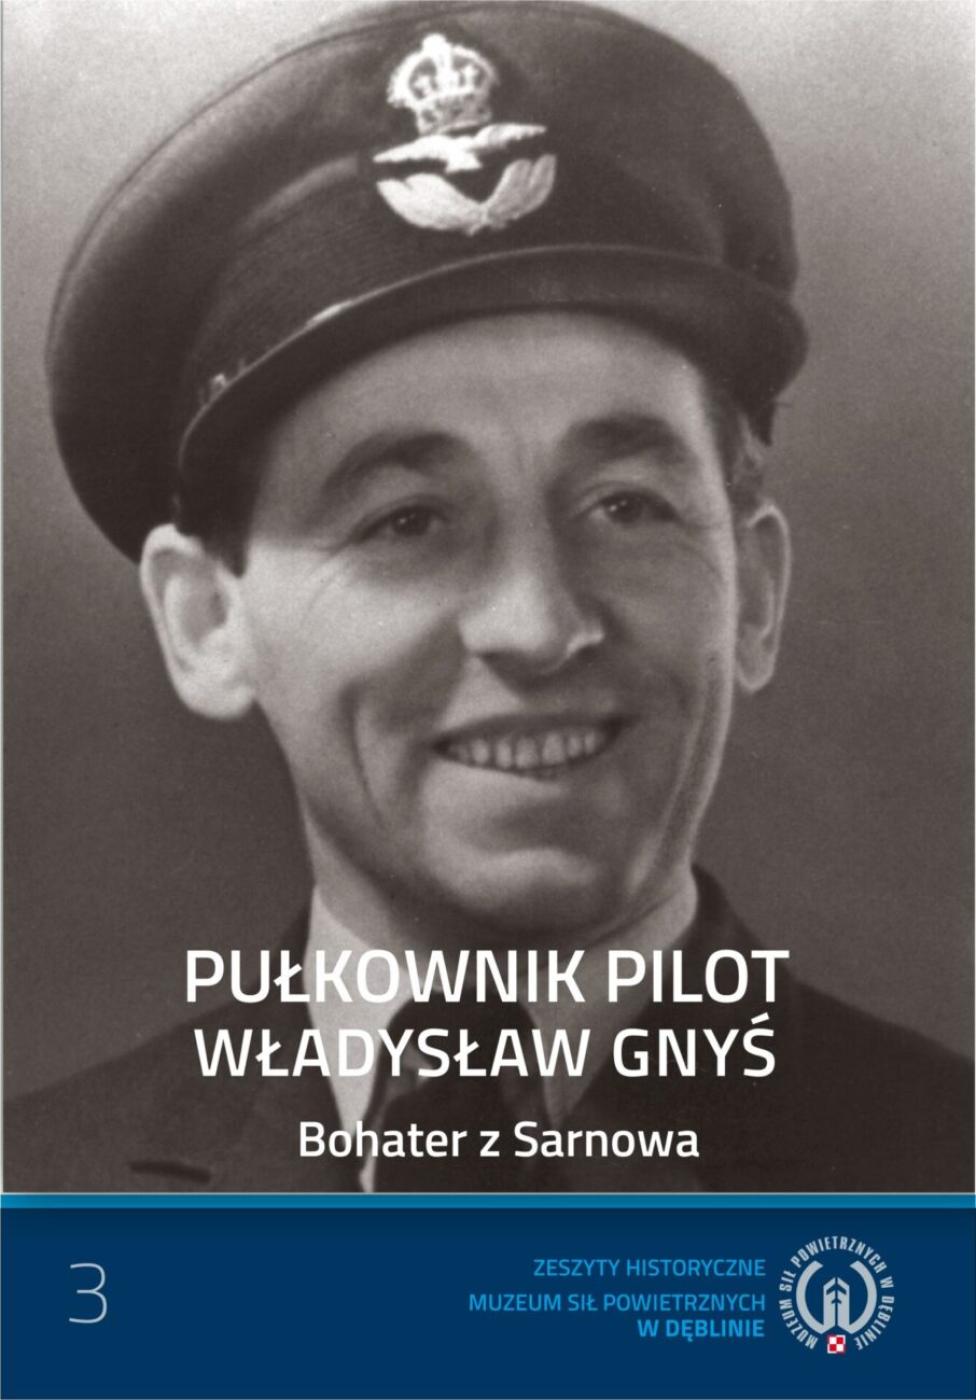 Pułkownik pilot Władysław Gnyś. Bohater z Sarnowa (fot. muzeumsp.pl)